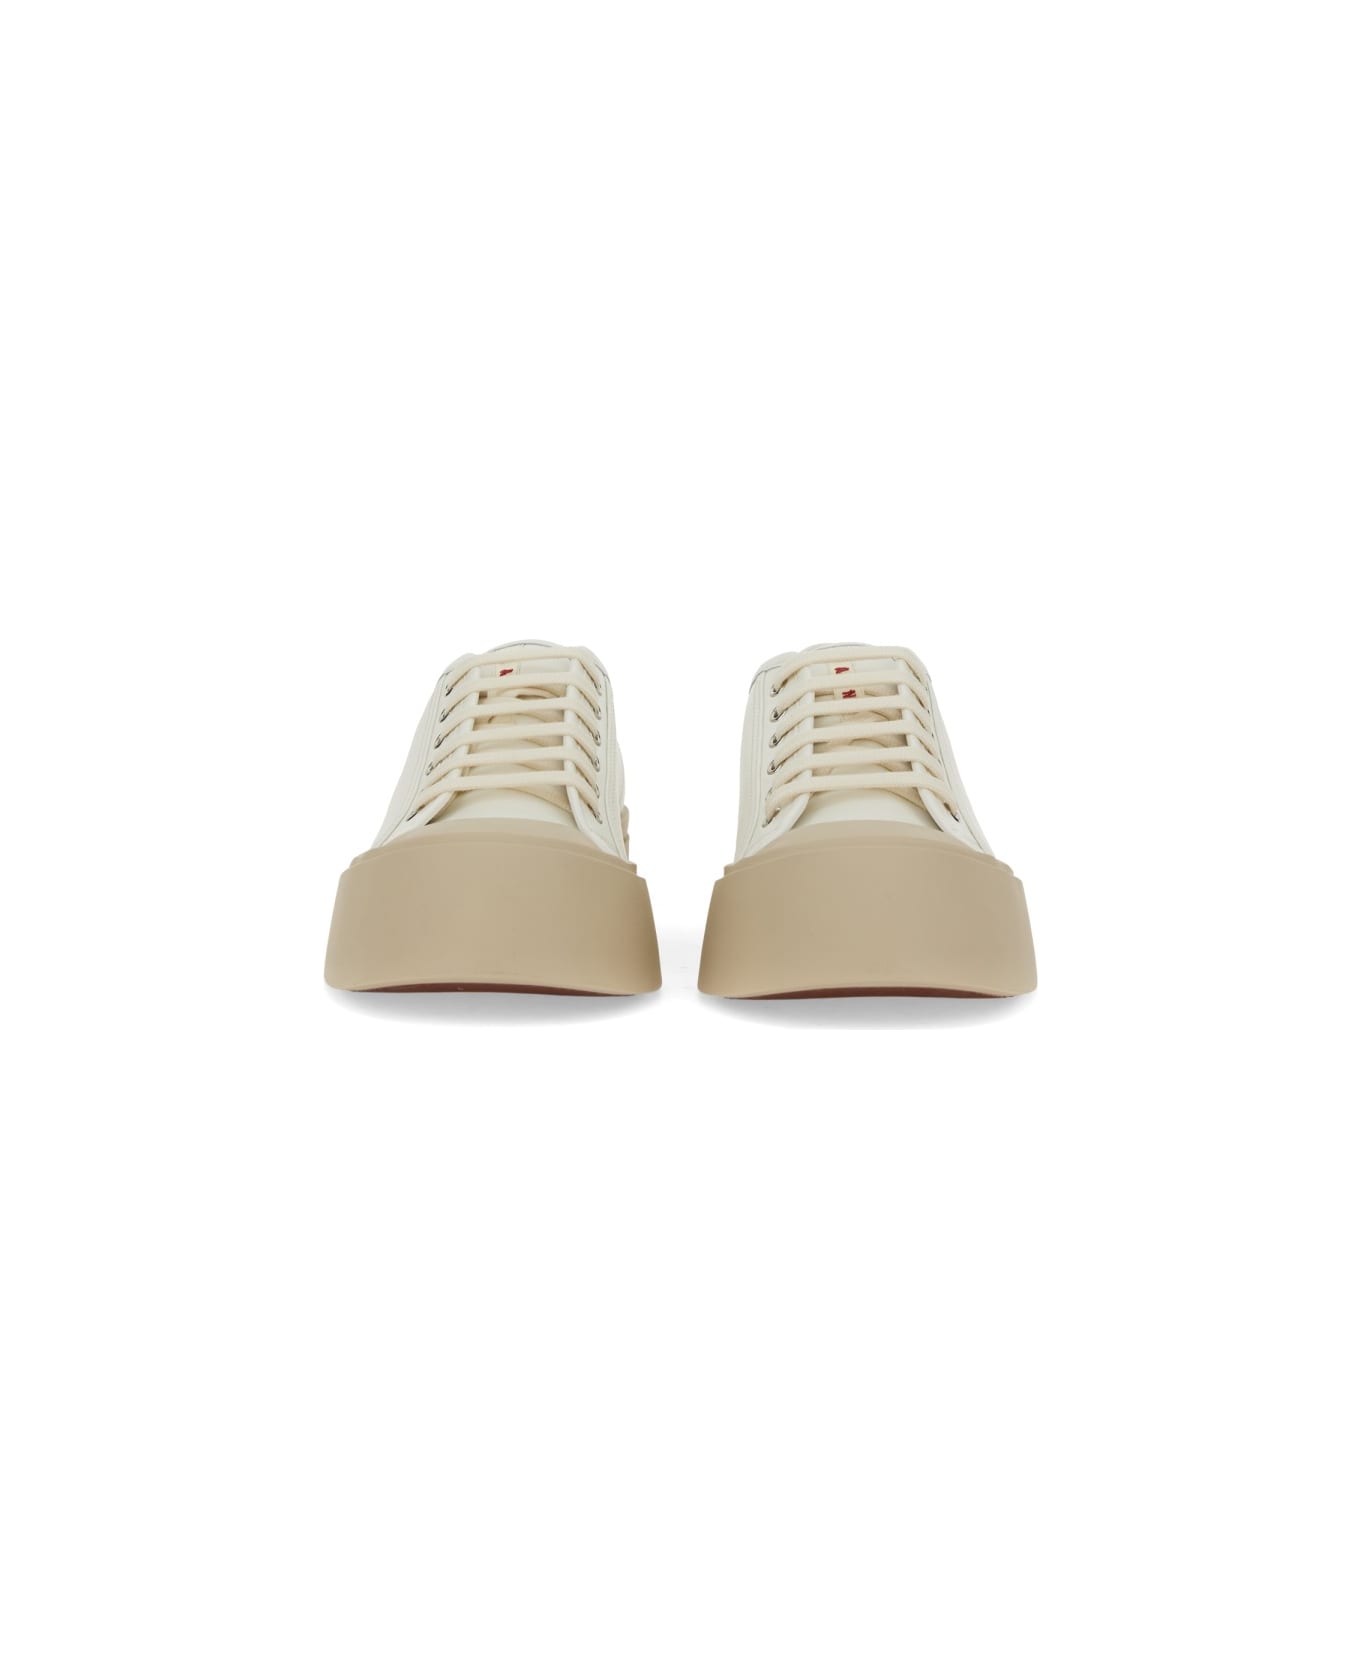 Marni "pablo" Sneaker - WHITE